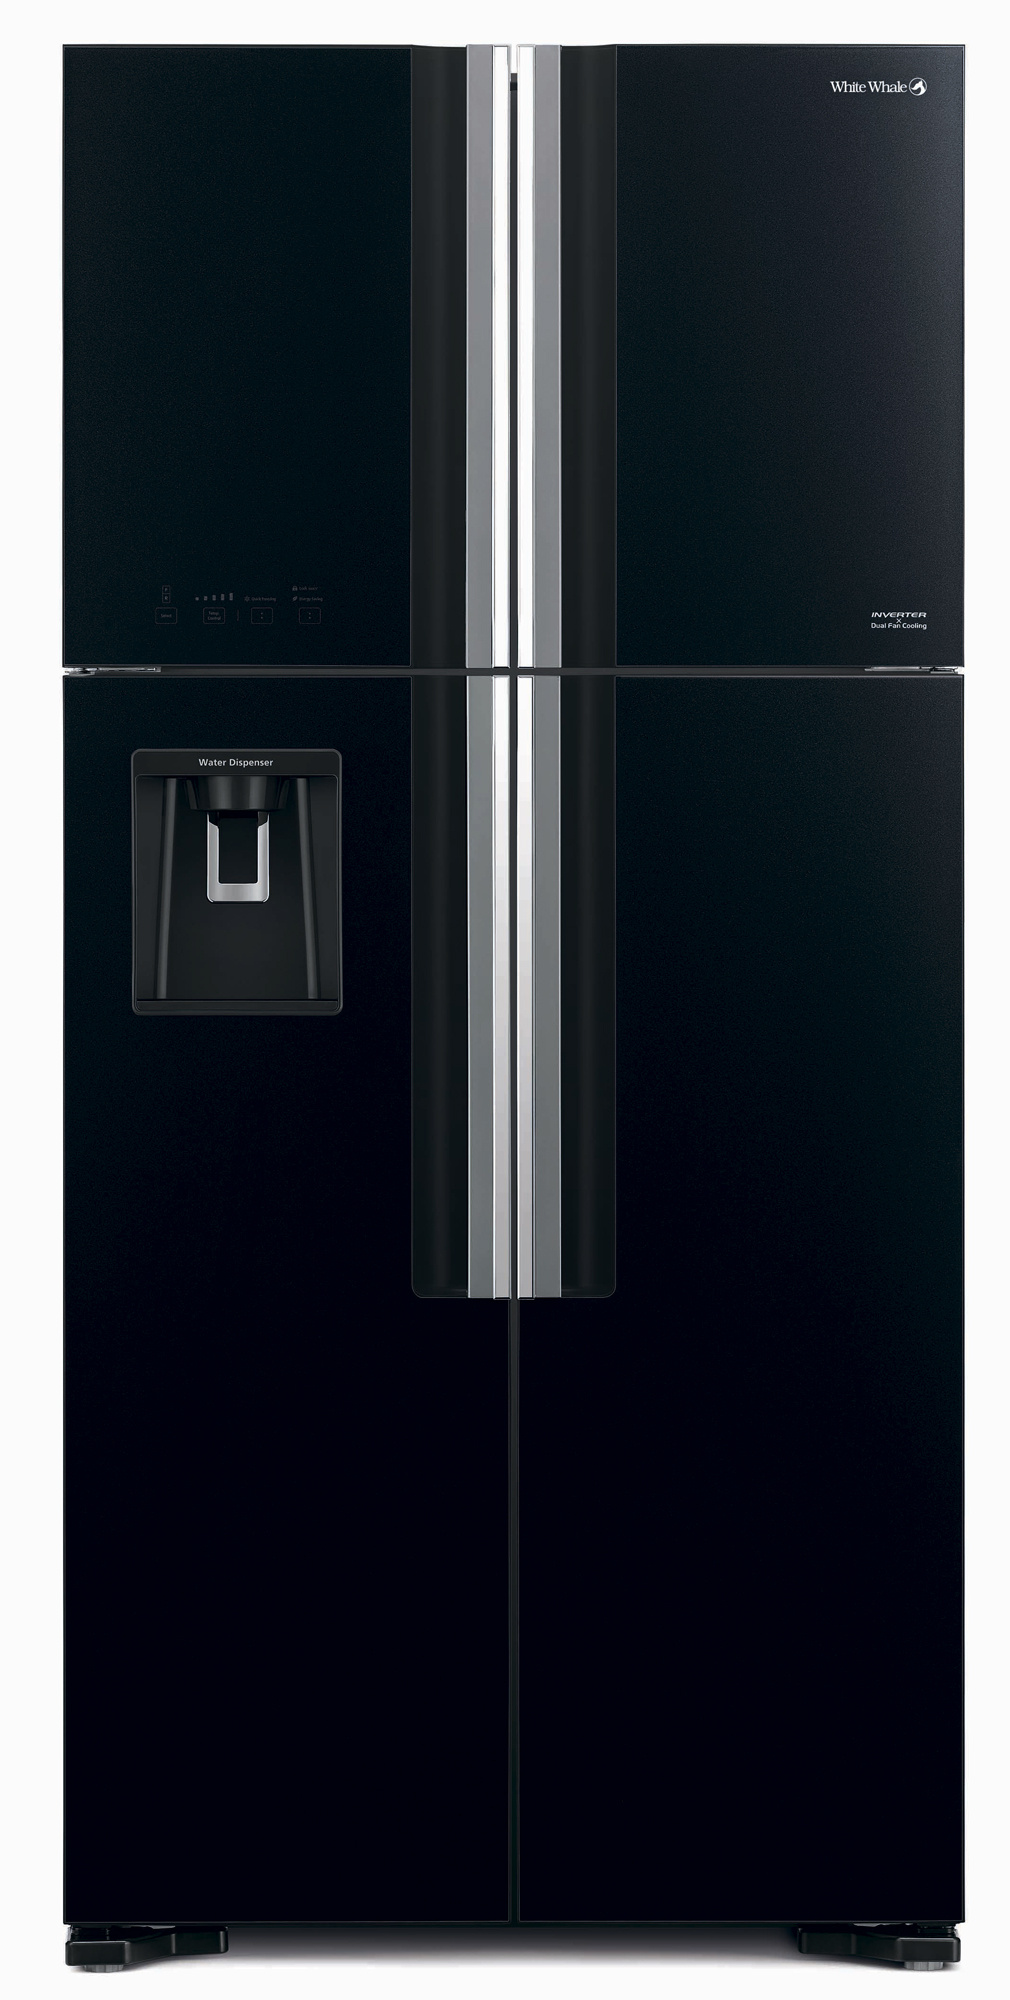 Холодильник Hitachi R-W660PUC7 GBK черное стекло (двухкамерный)